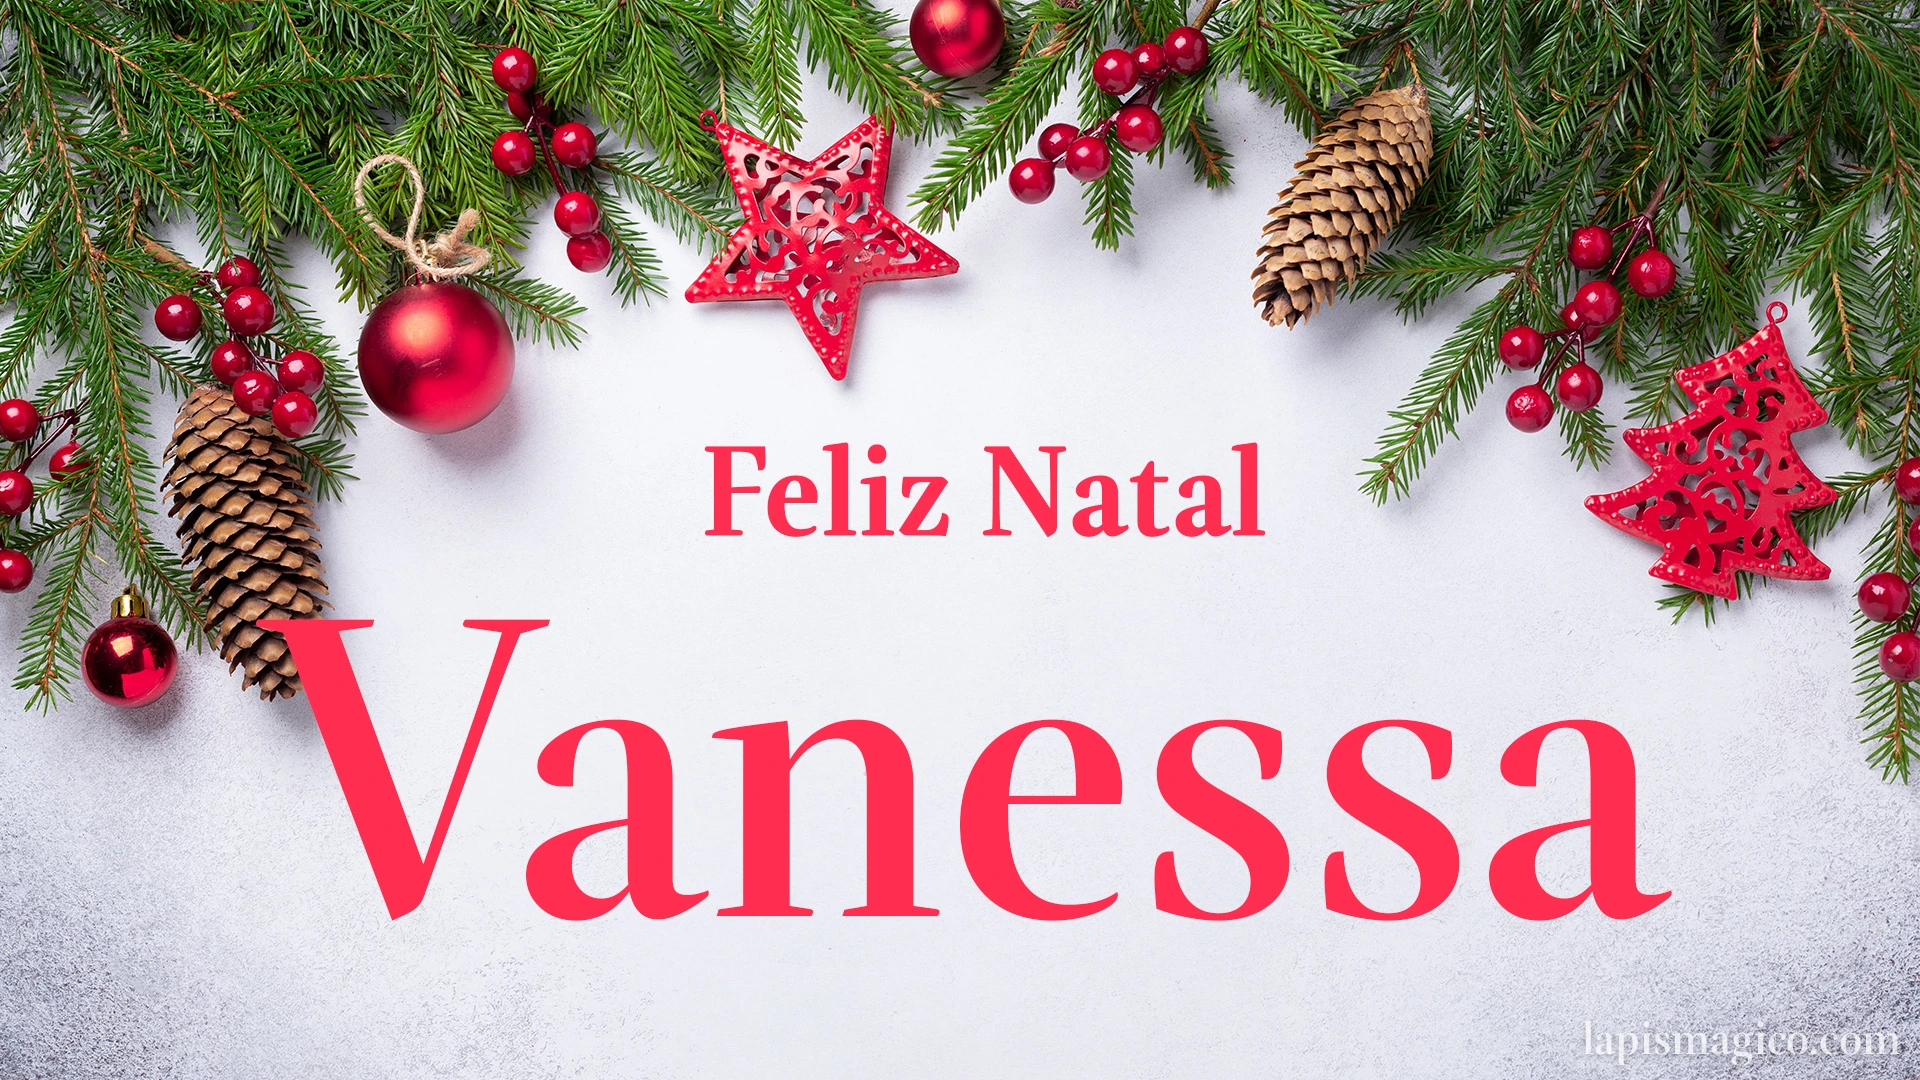 Oh Vanessa, cinco postais de Feliz Natal Postal com o teu nome